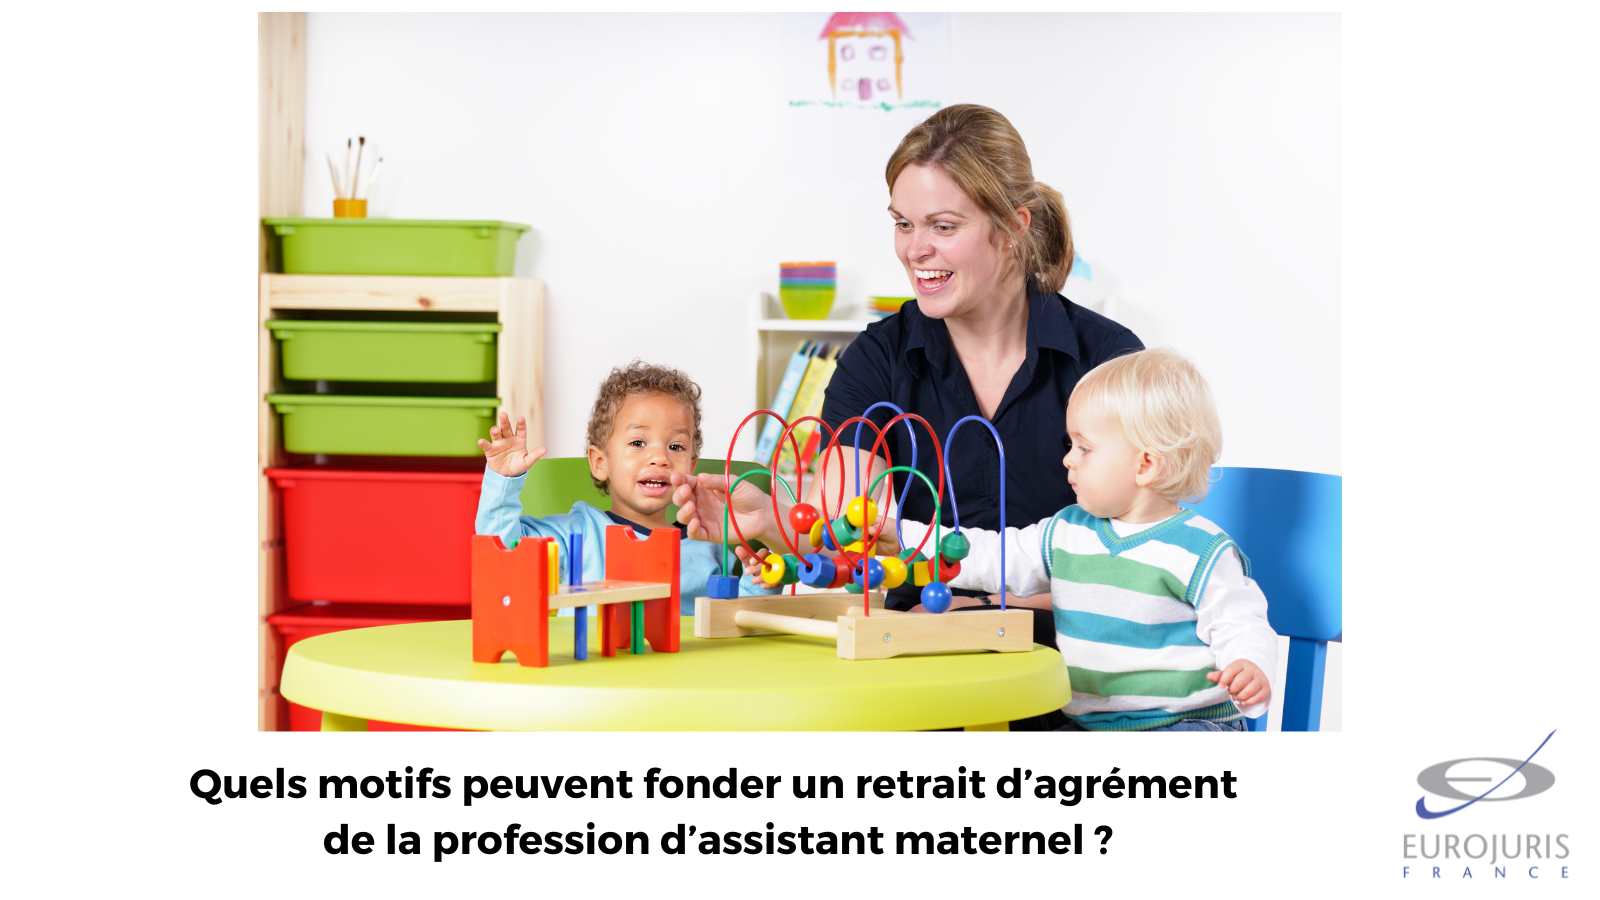 Précisions sur les motifs pouvant fonder un retrait d’agrément de la profession d’assistant maternel